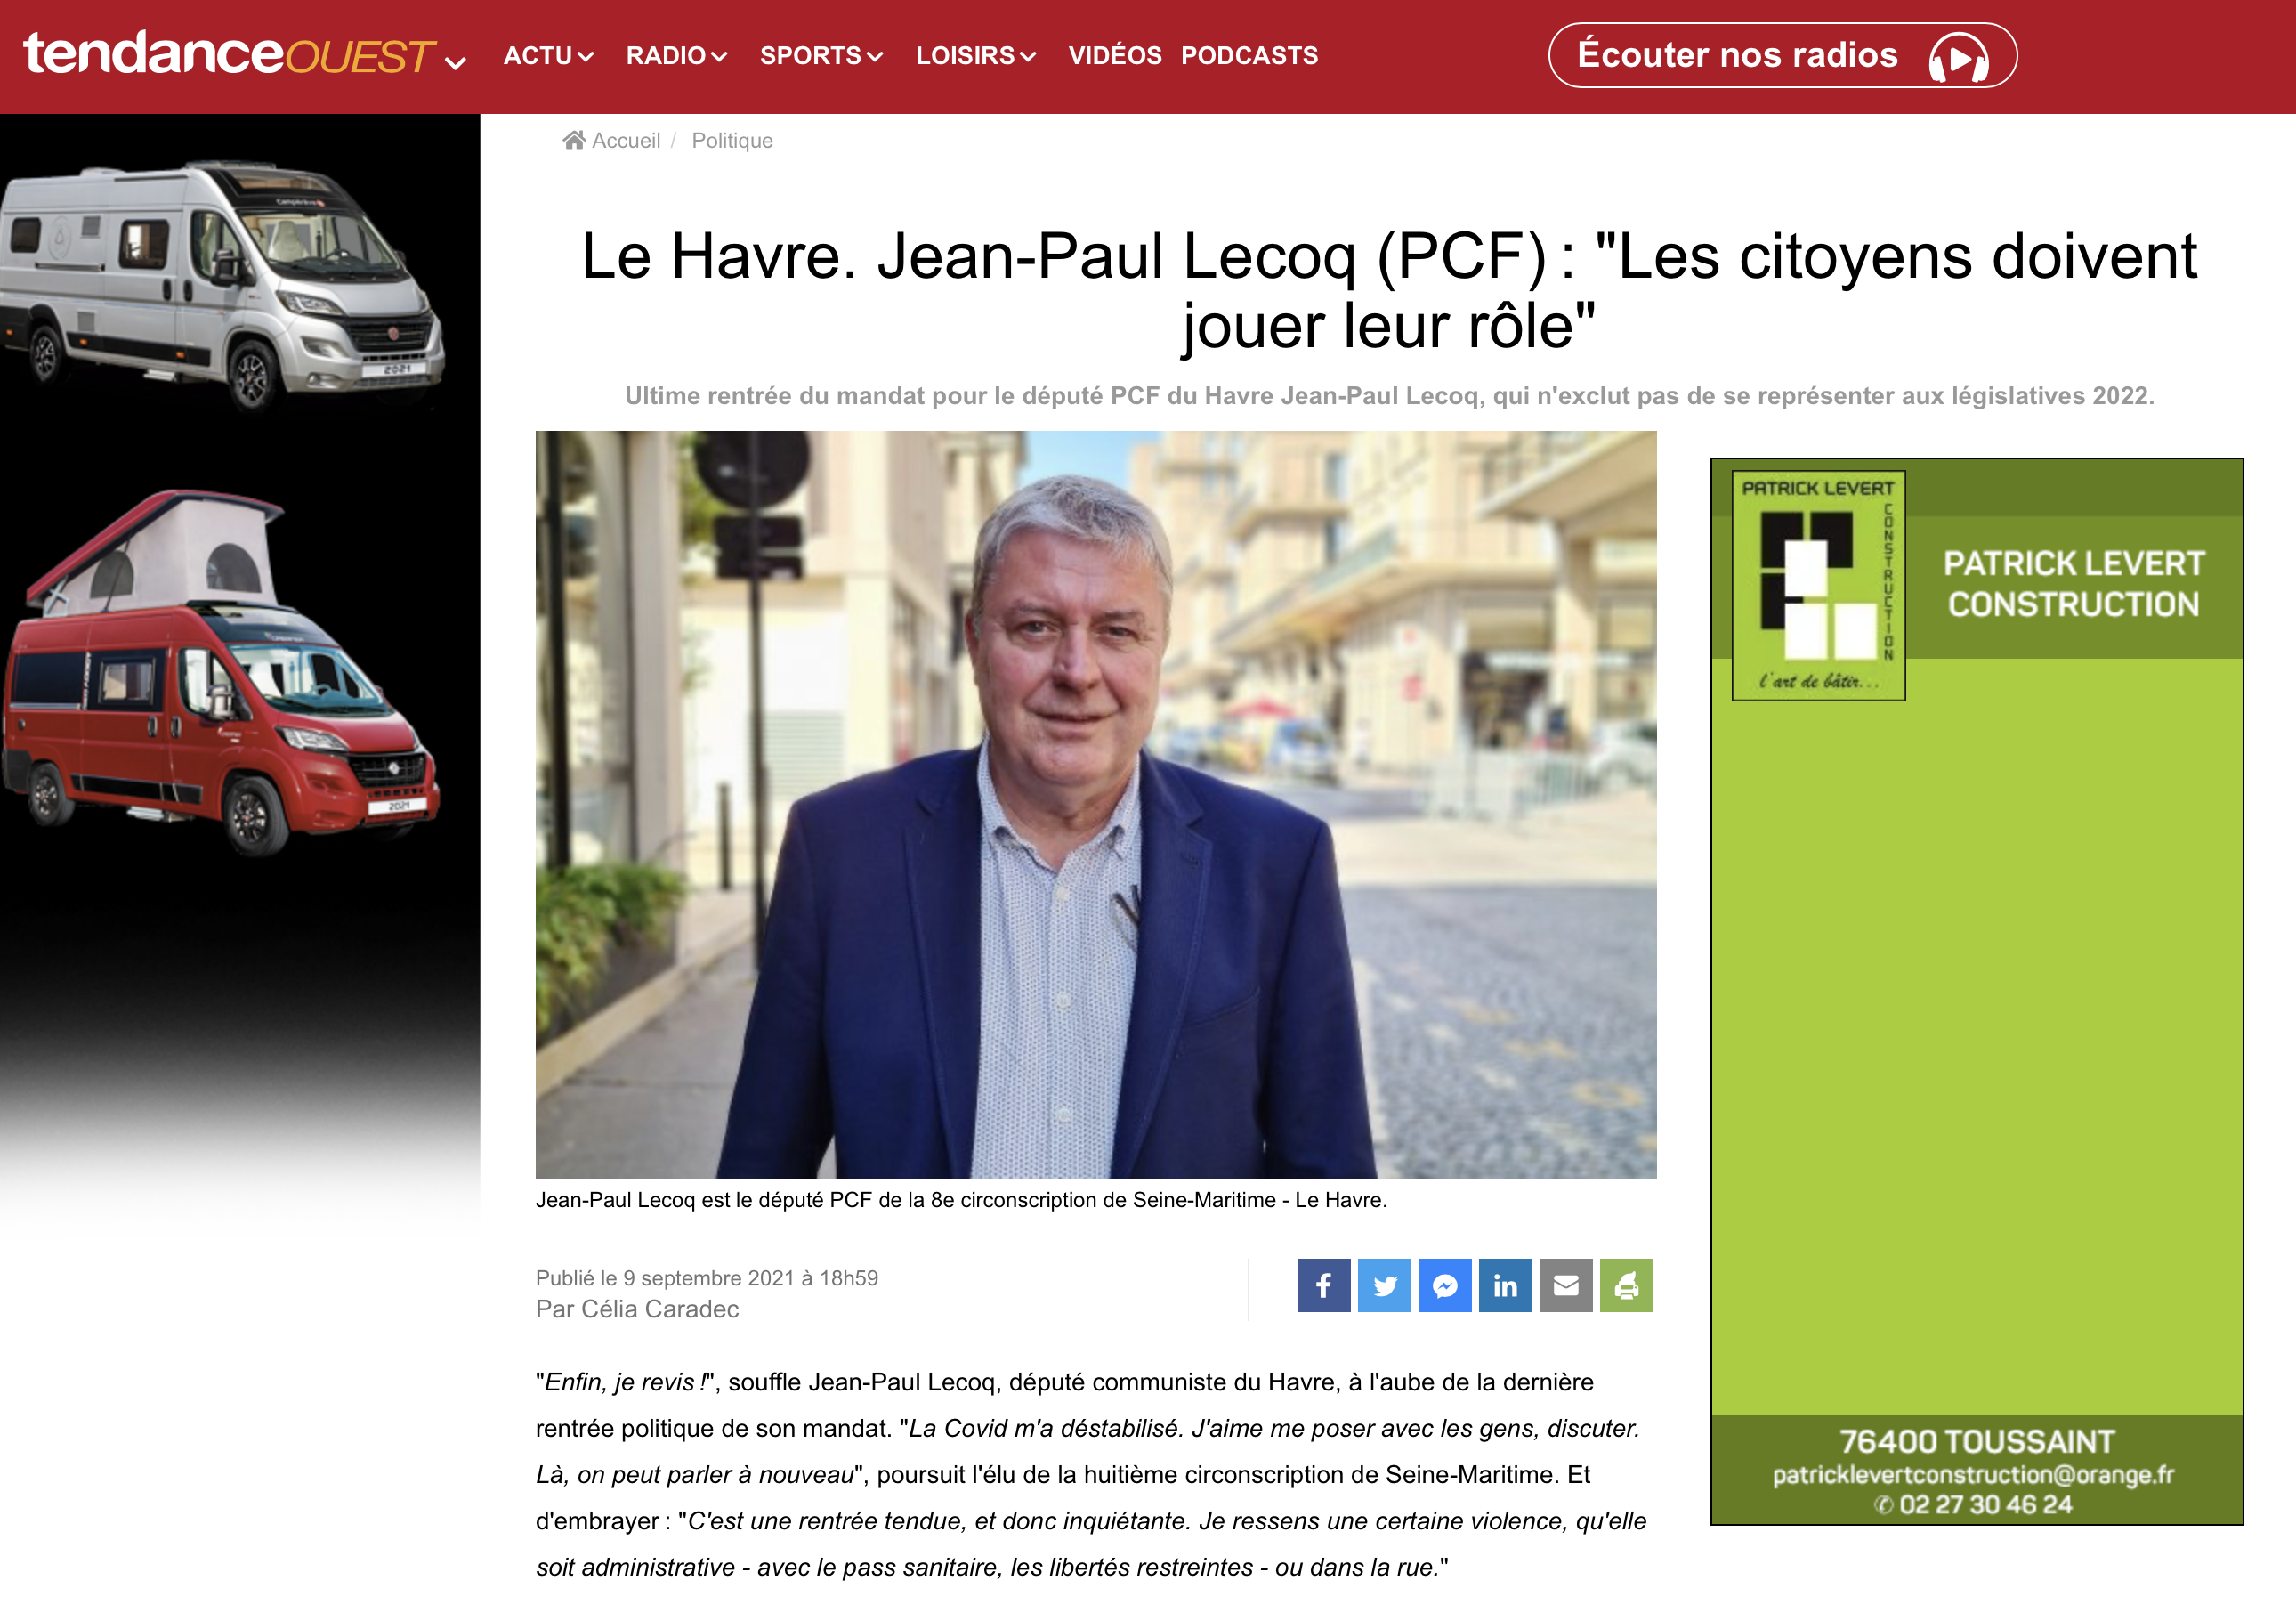 Le Havre. Jean-Paul Lecoq (PCF) : "Les citoyens doivent jouer leur rôle" {HTML}